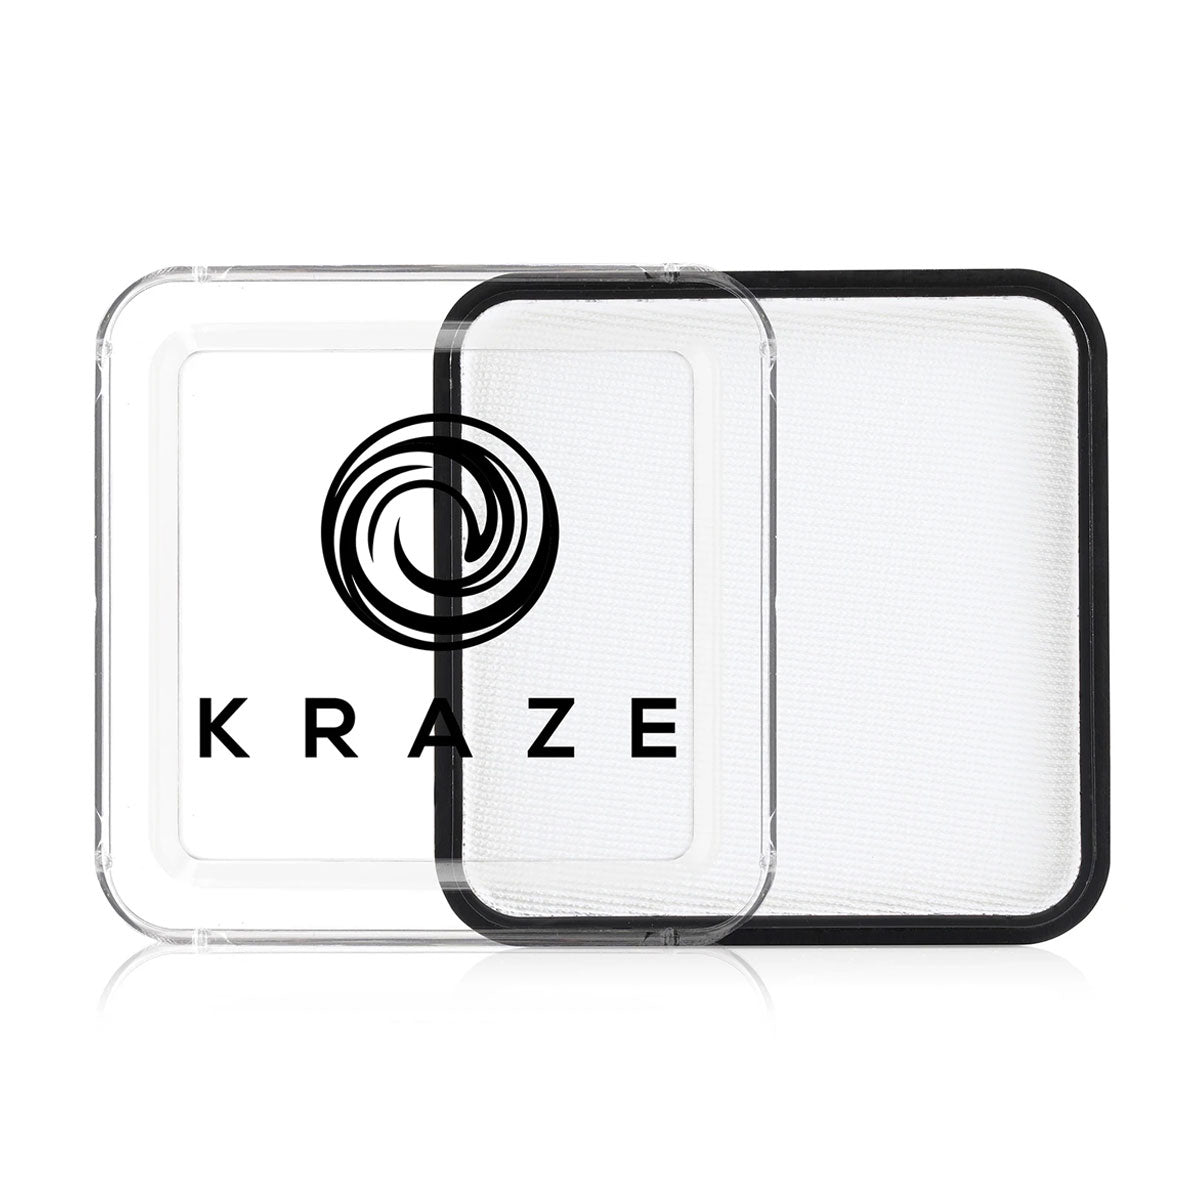 White Square 25g - Kraze